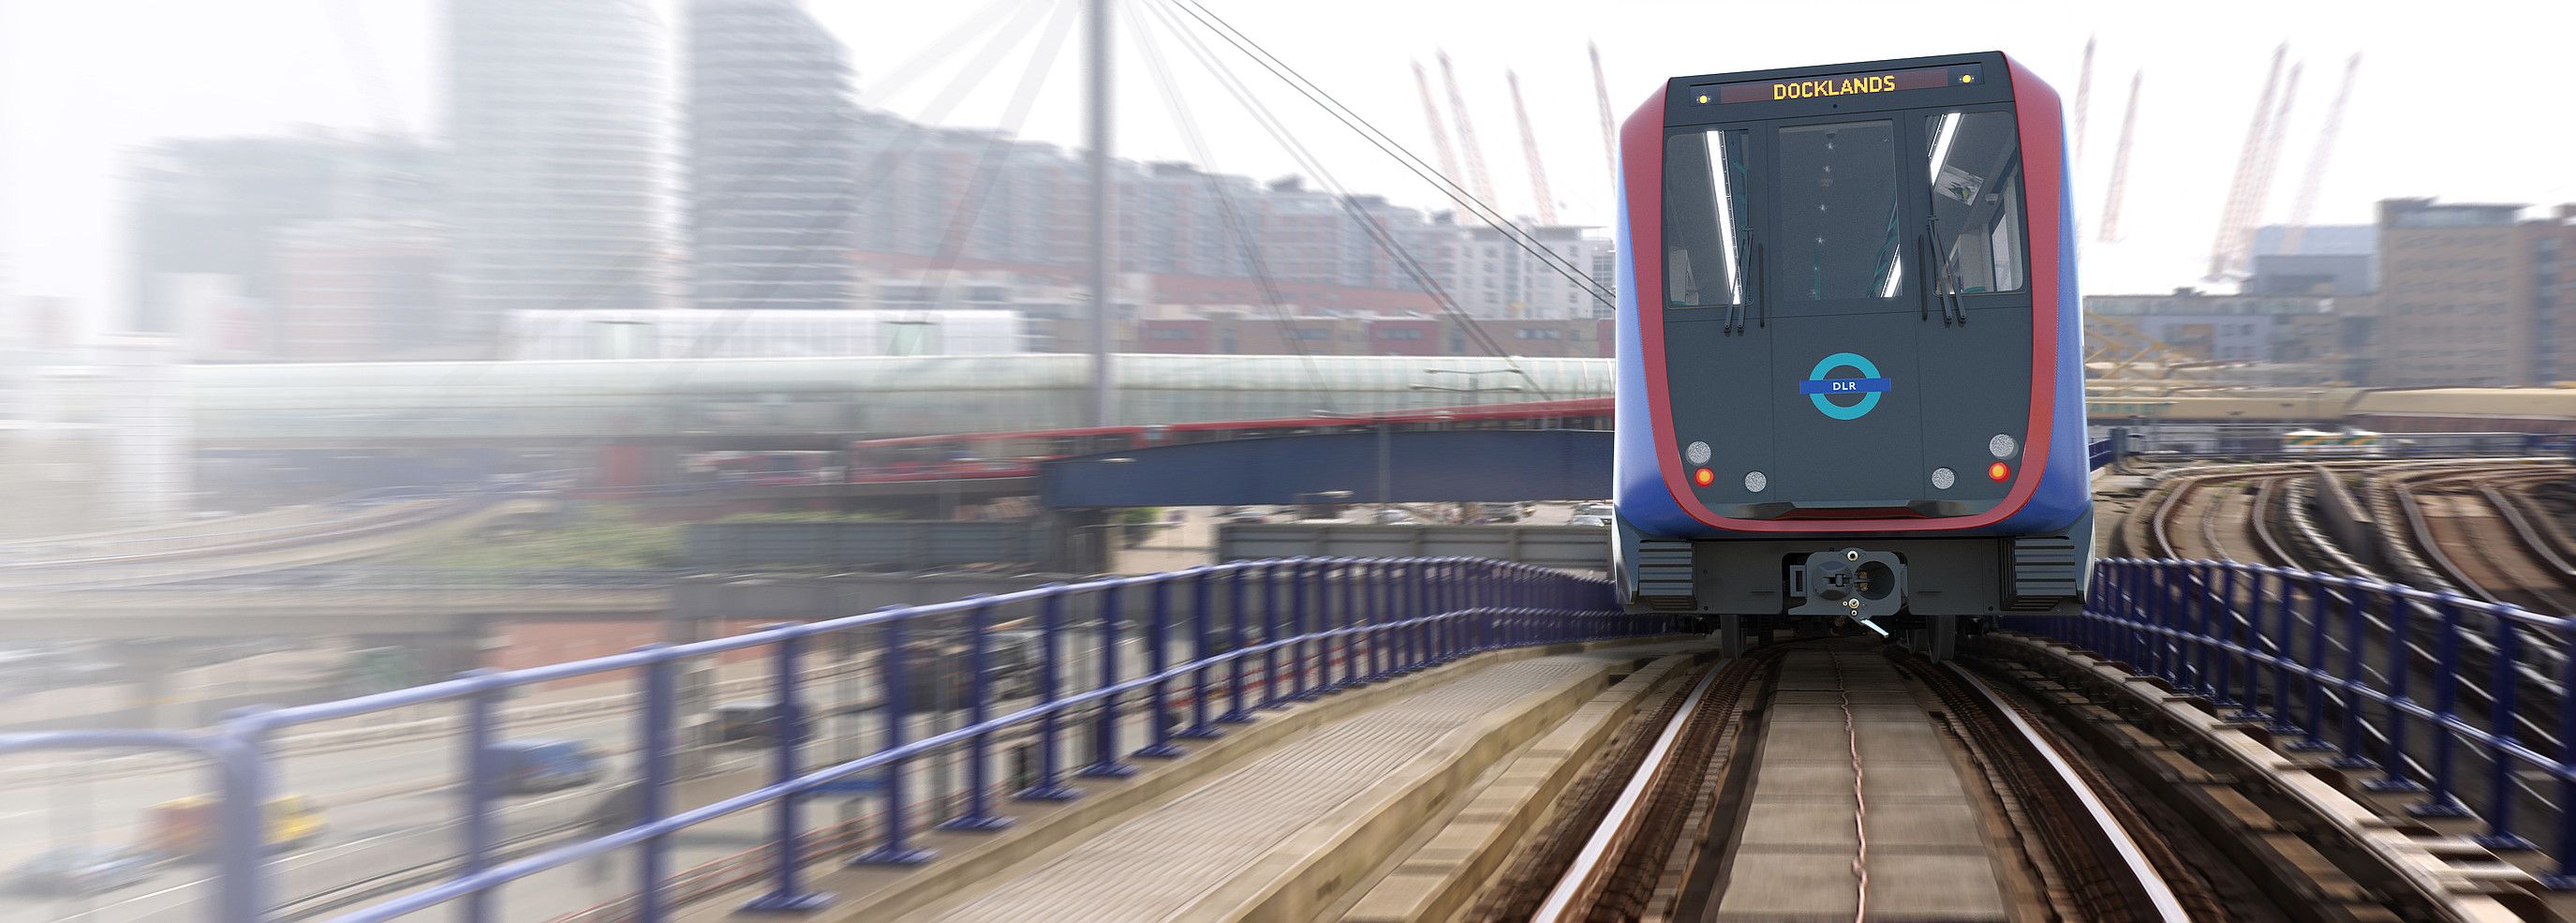 CAFek Londresko DLR trenbide sarerako diseinatutako tren modeloa. CAF.